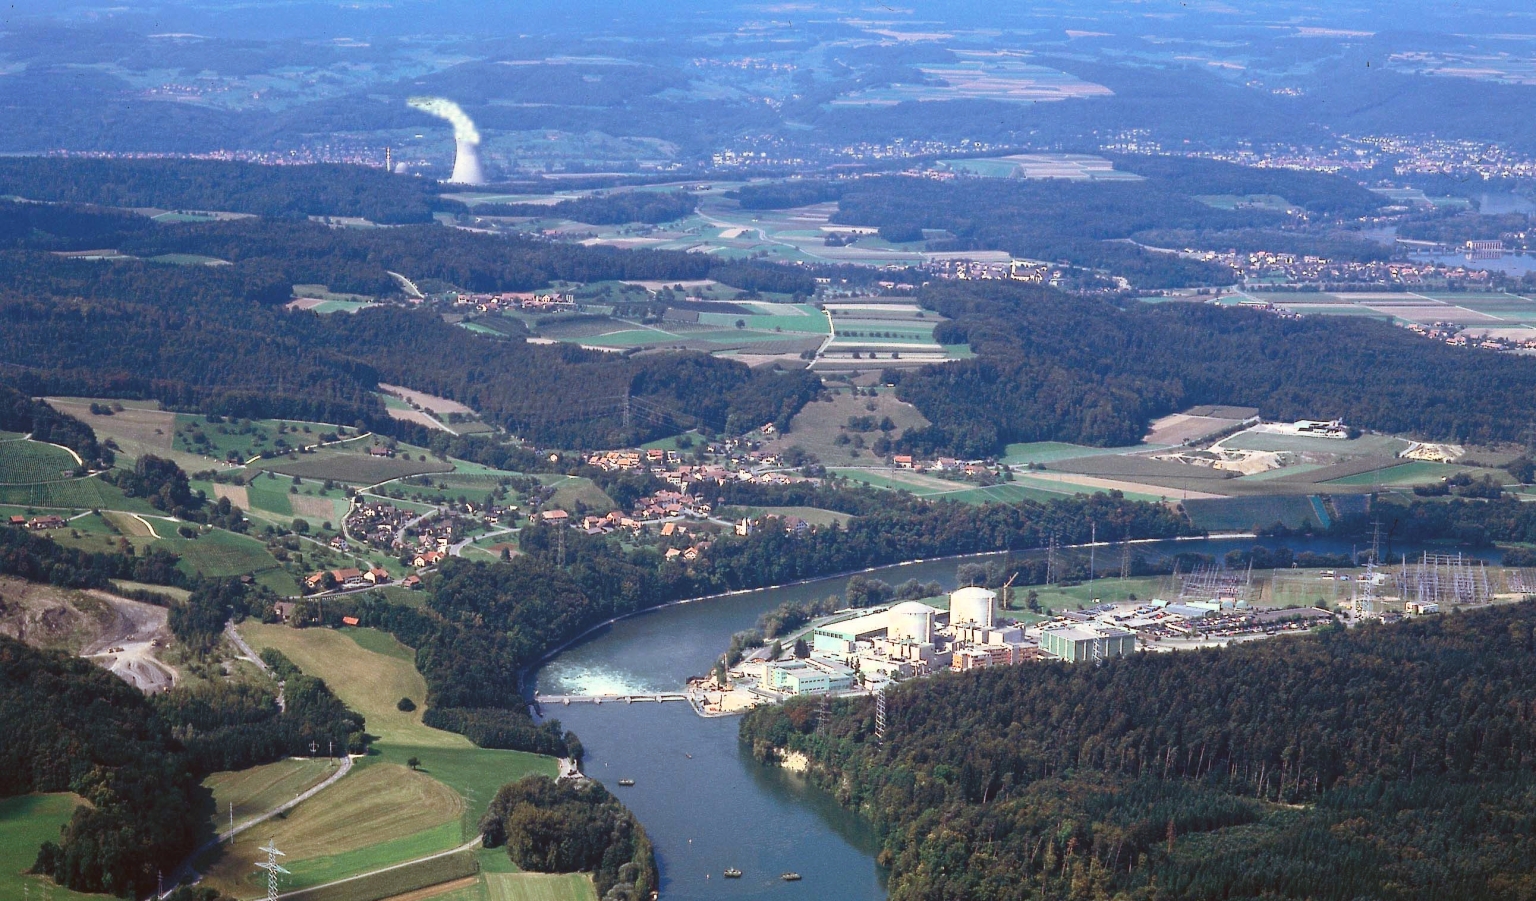 Le Conseil d’Etat d’Argovie soutient la sortie du nucléaire. Sur la photo, les centrales nucléaires argoviennes de Beznau et de Leibstadt (à l’arrière-plan).